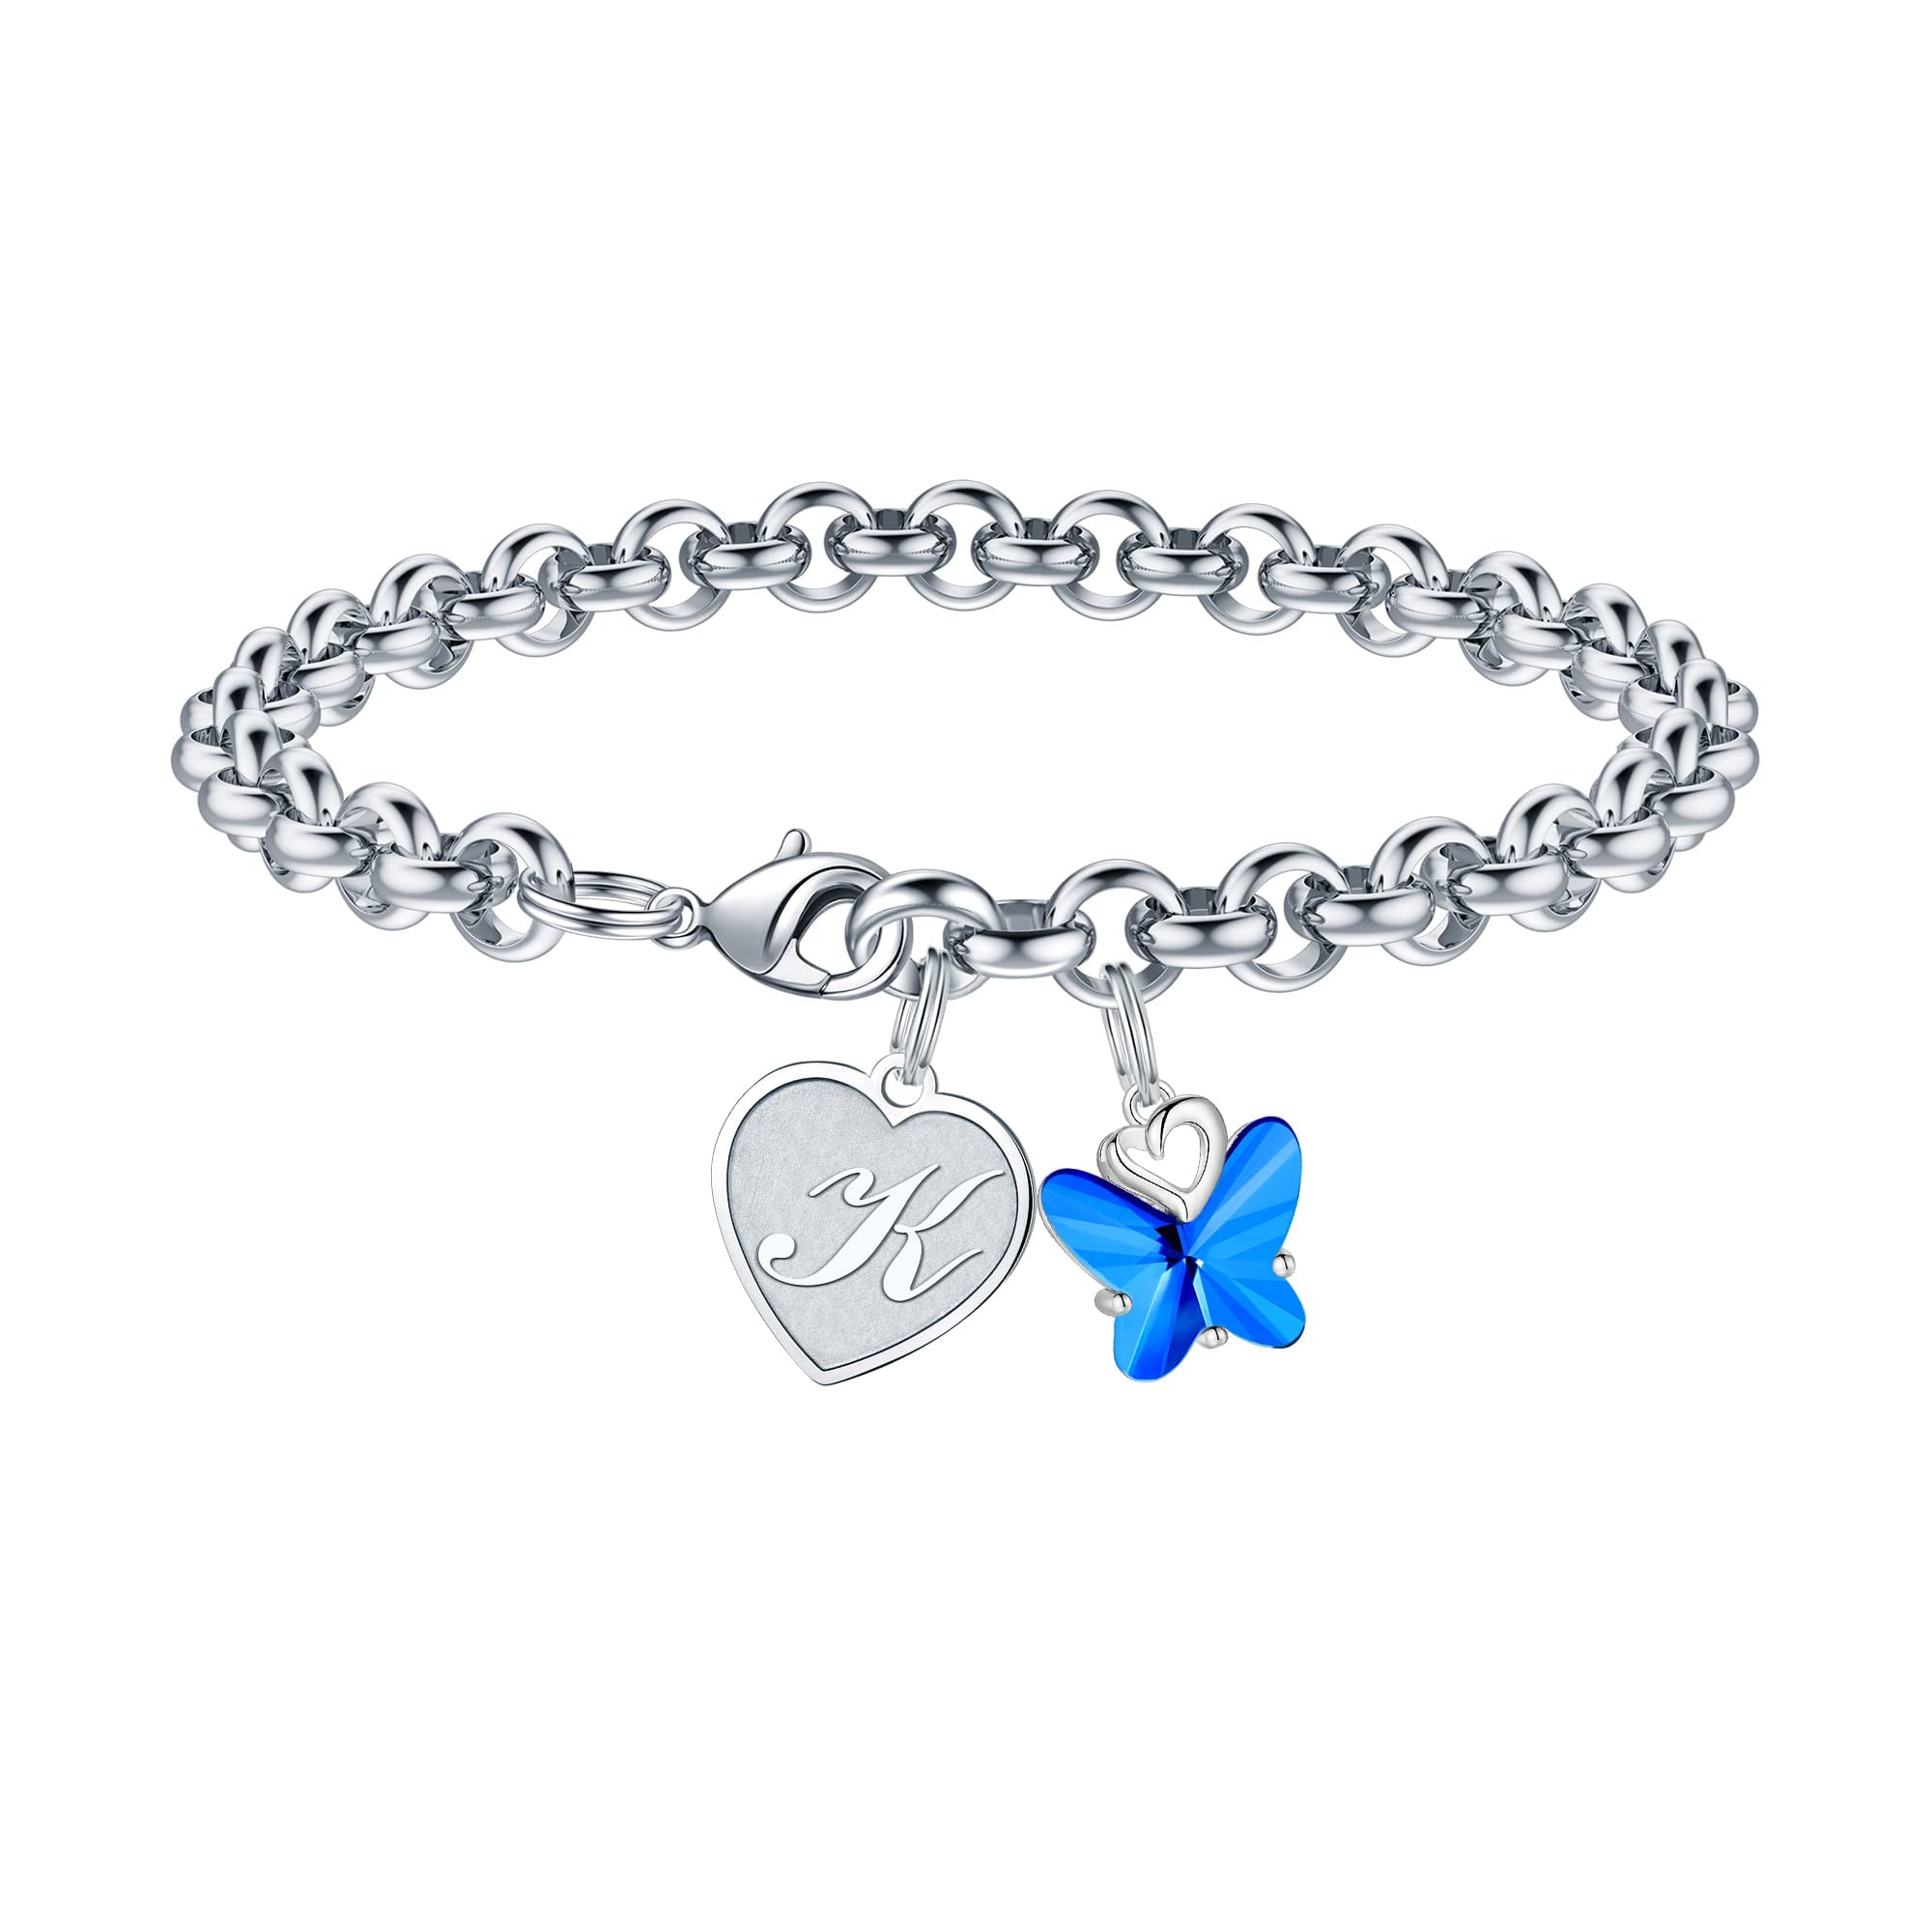 Heart Chain Bracelet 8 in Dainty Charm Bracelet Silver Bracelet for Love Heart Jewelry for Women Mother Teen Girls